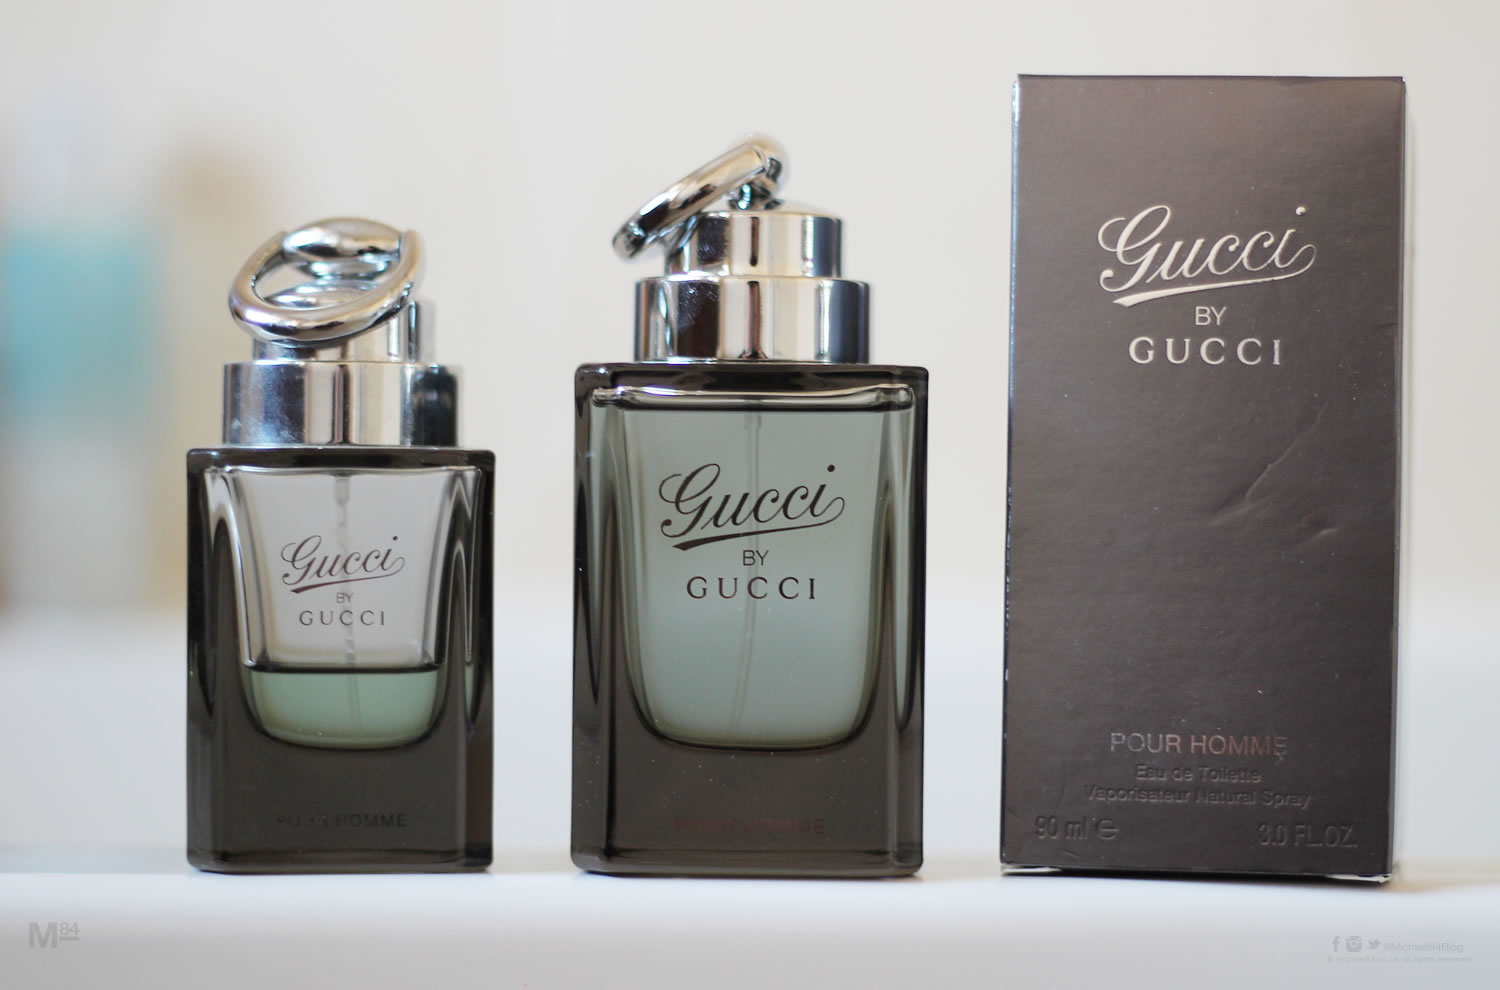 Gucci Pour Homme 3.0 oz Eau de Toilette Spray